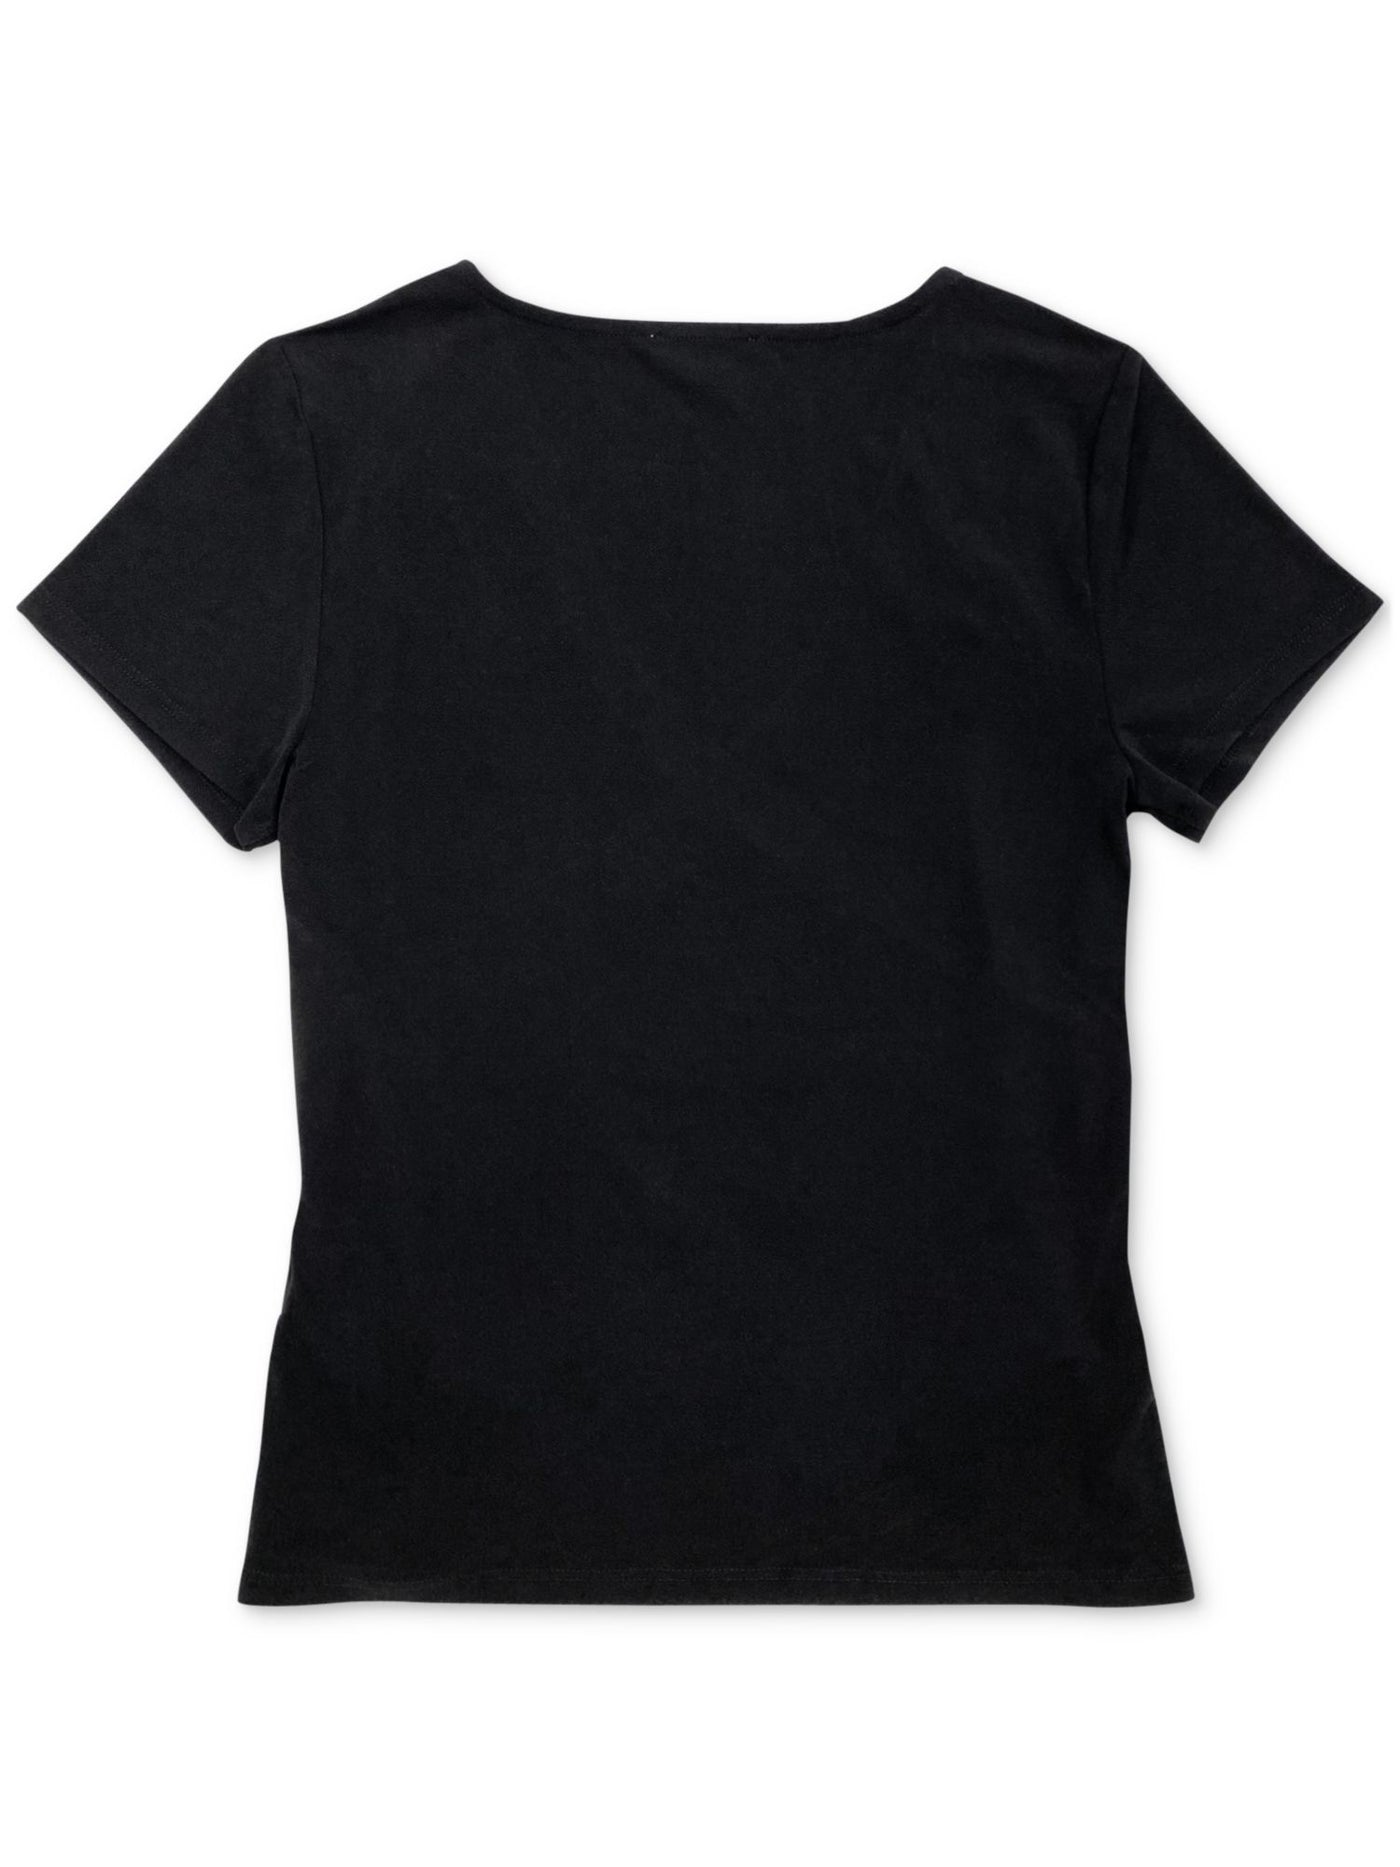 BAR III Womens Black Short Sleeve Surplice Neckline Wear To Work Faux Wrap Top S